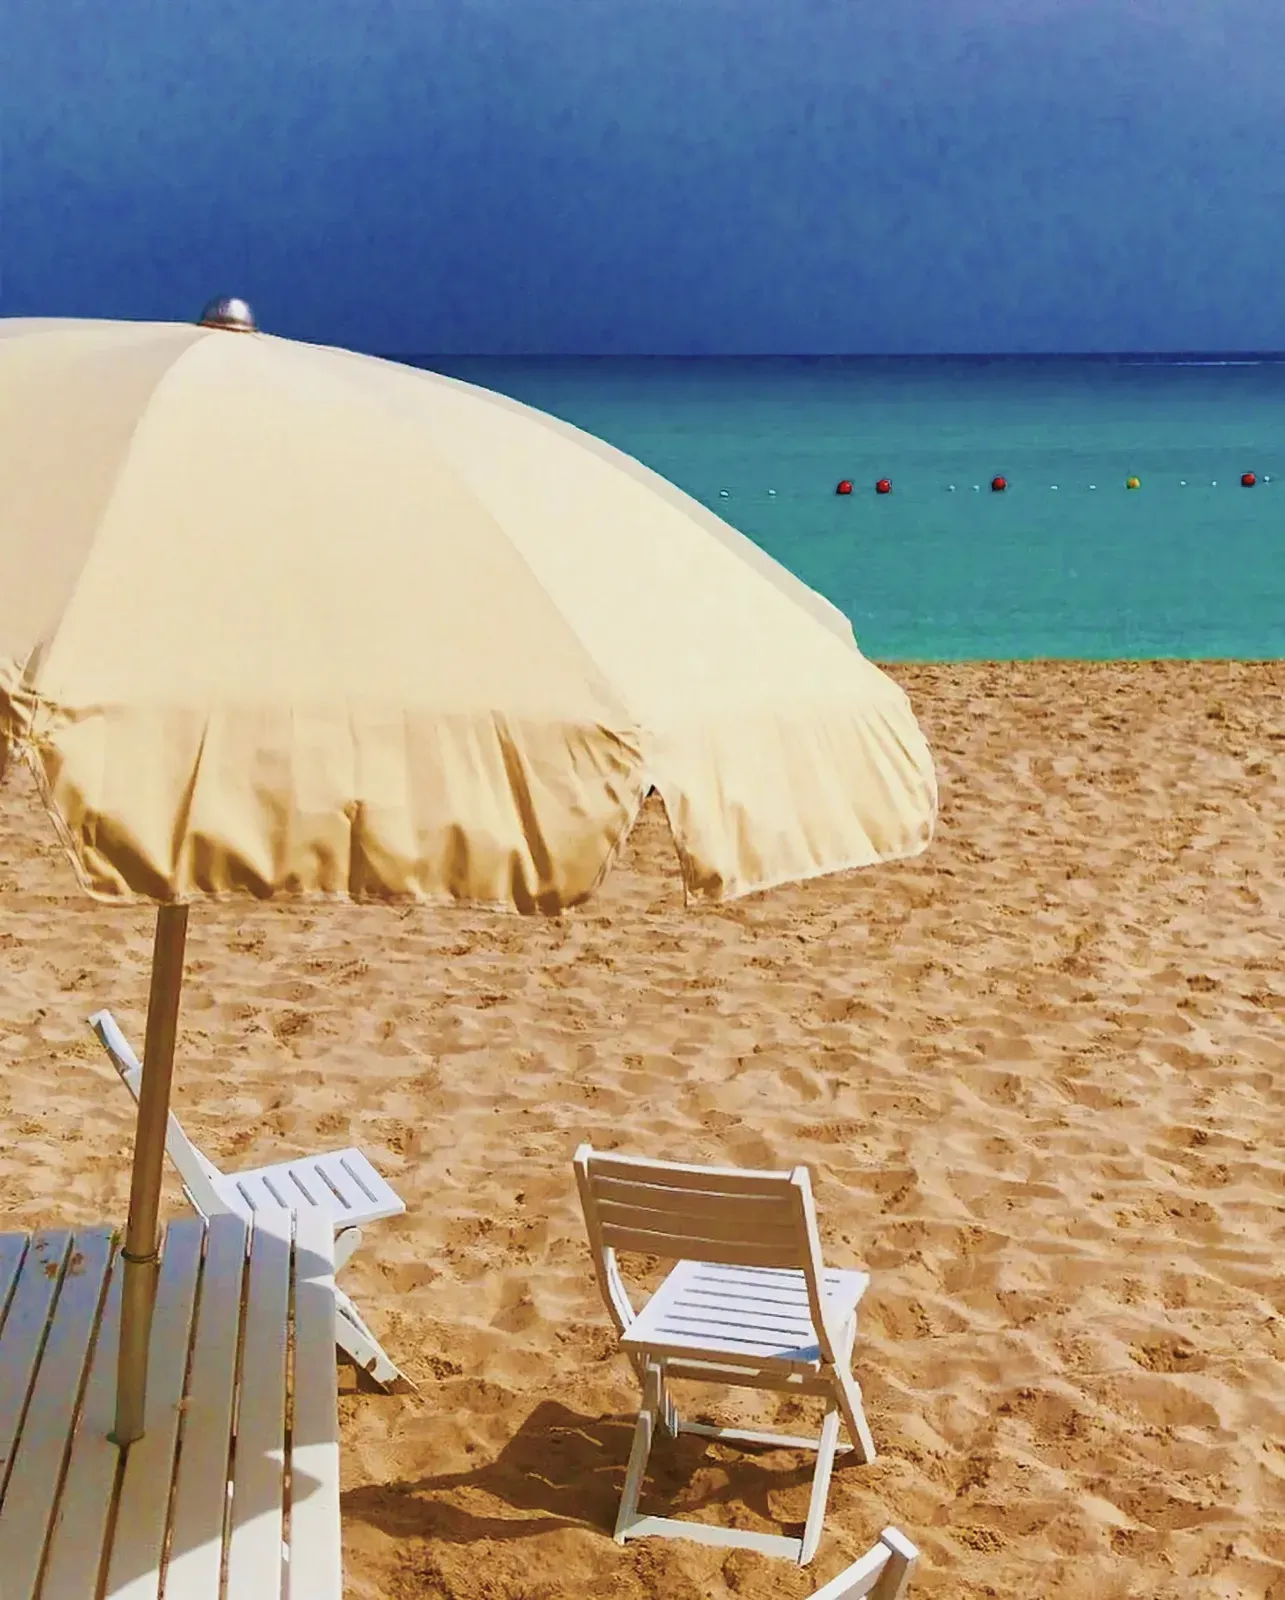 A serene beach with a white chair and umbrella.